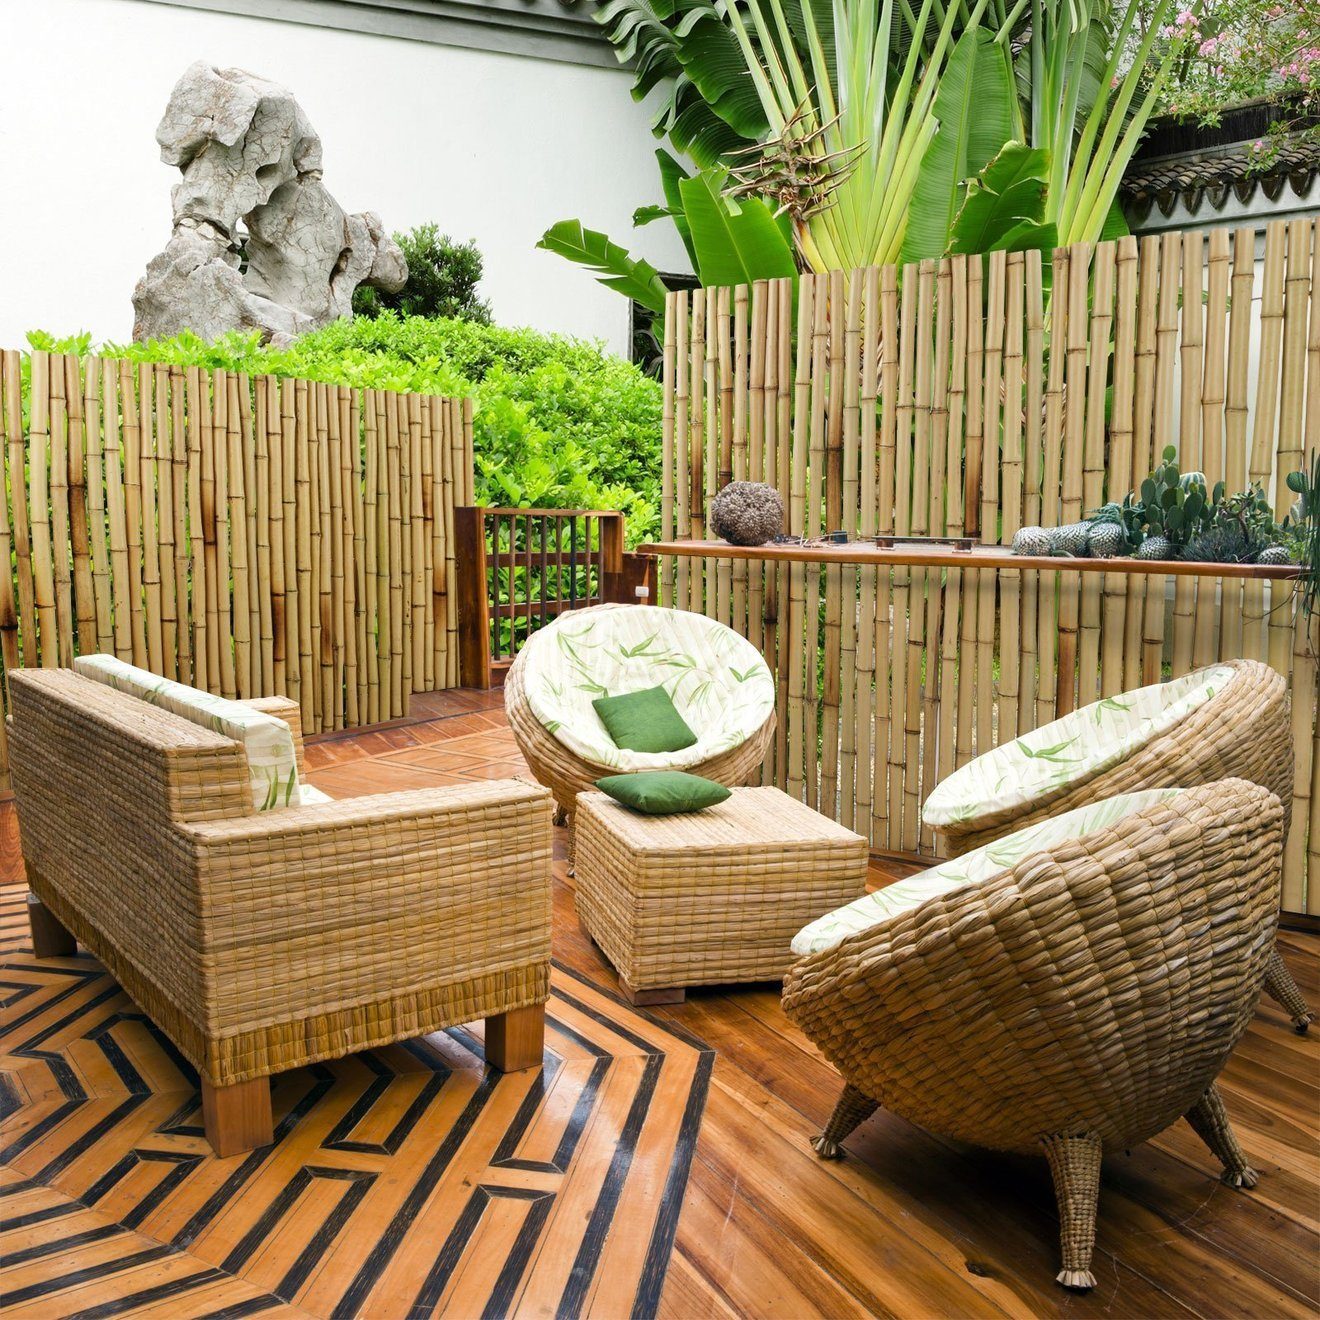 Karat Sichtschutzzaunmatten Bambus-Sichtschutz, verschiedene Farben & Größen, Witterungsbeständig, Aus Bambusrohren